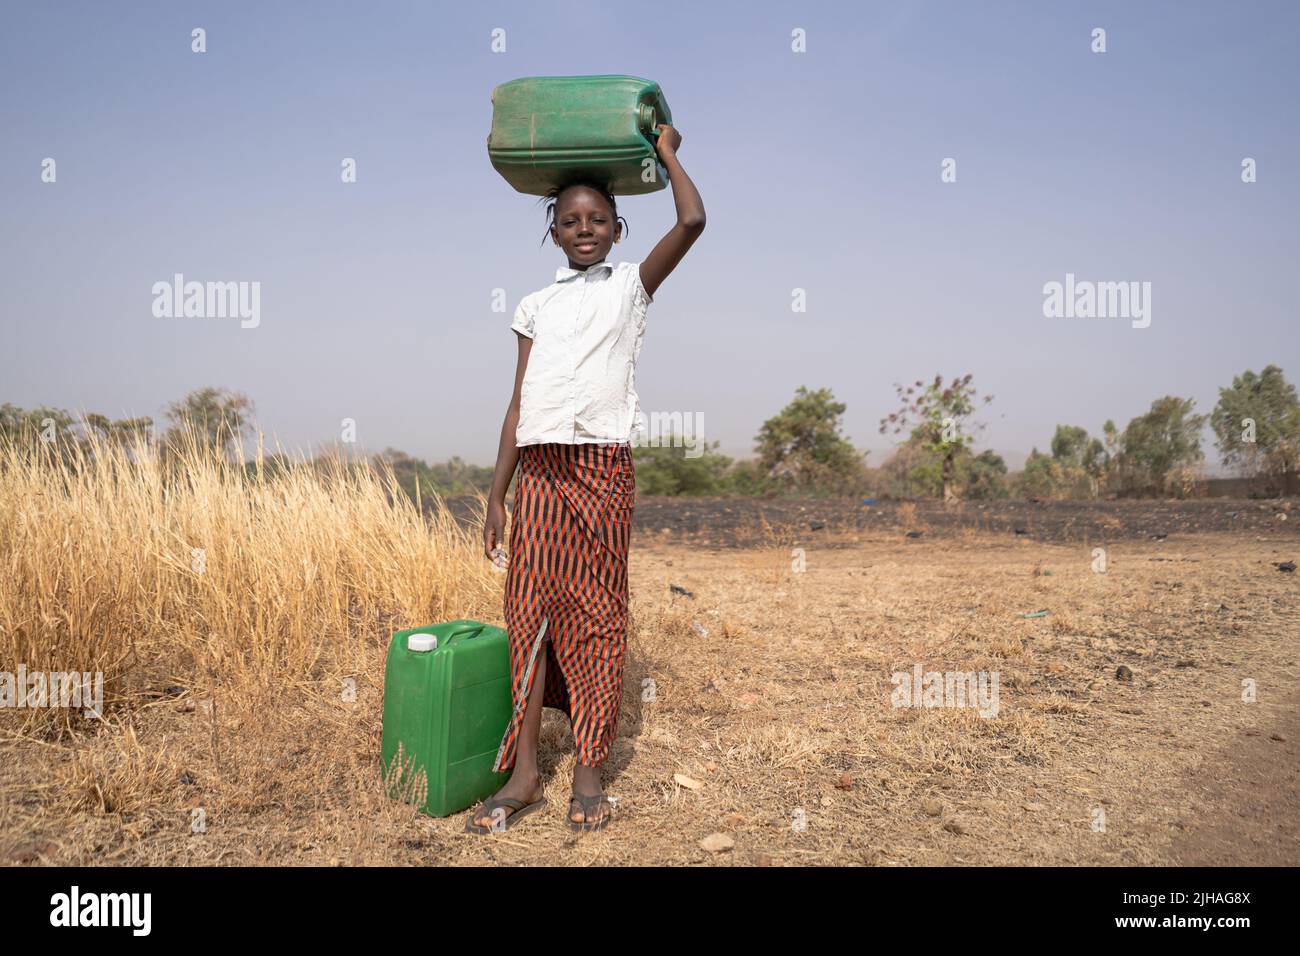 Ragazza africana con canister verdi in un paesaggio savana, che simboleggia la mancanza di infrastrutture idriche nei paesi in via di sviluppo Foto Stock